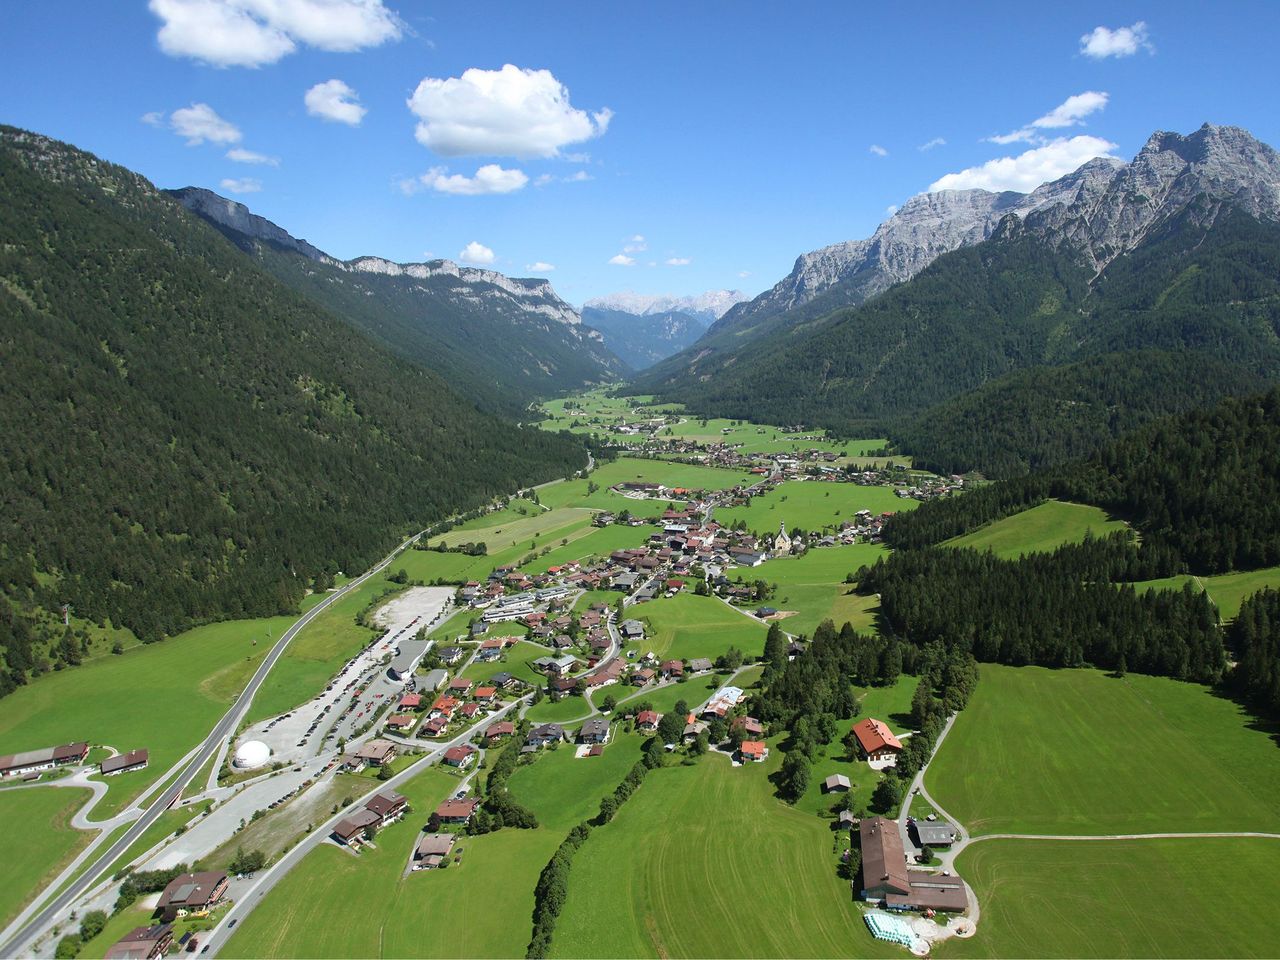 Motorradtouren durch die Kitzbüheler Alpen erleben